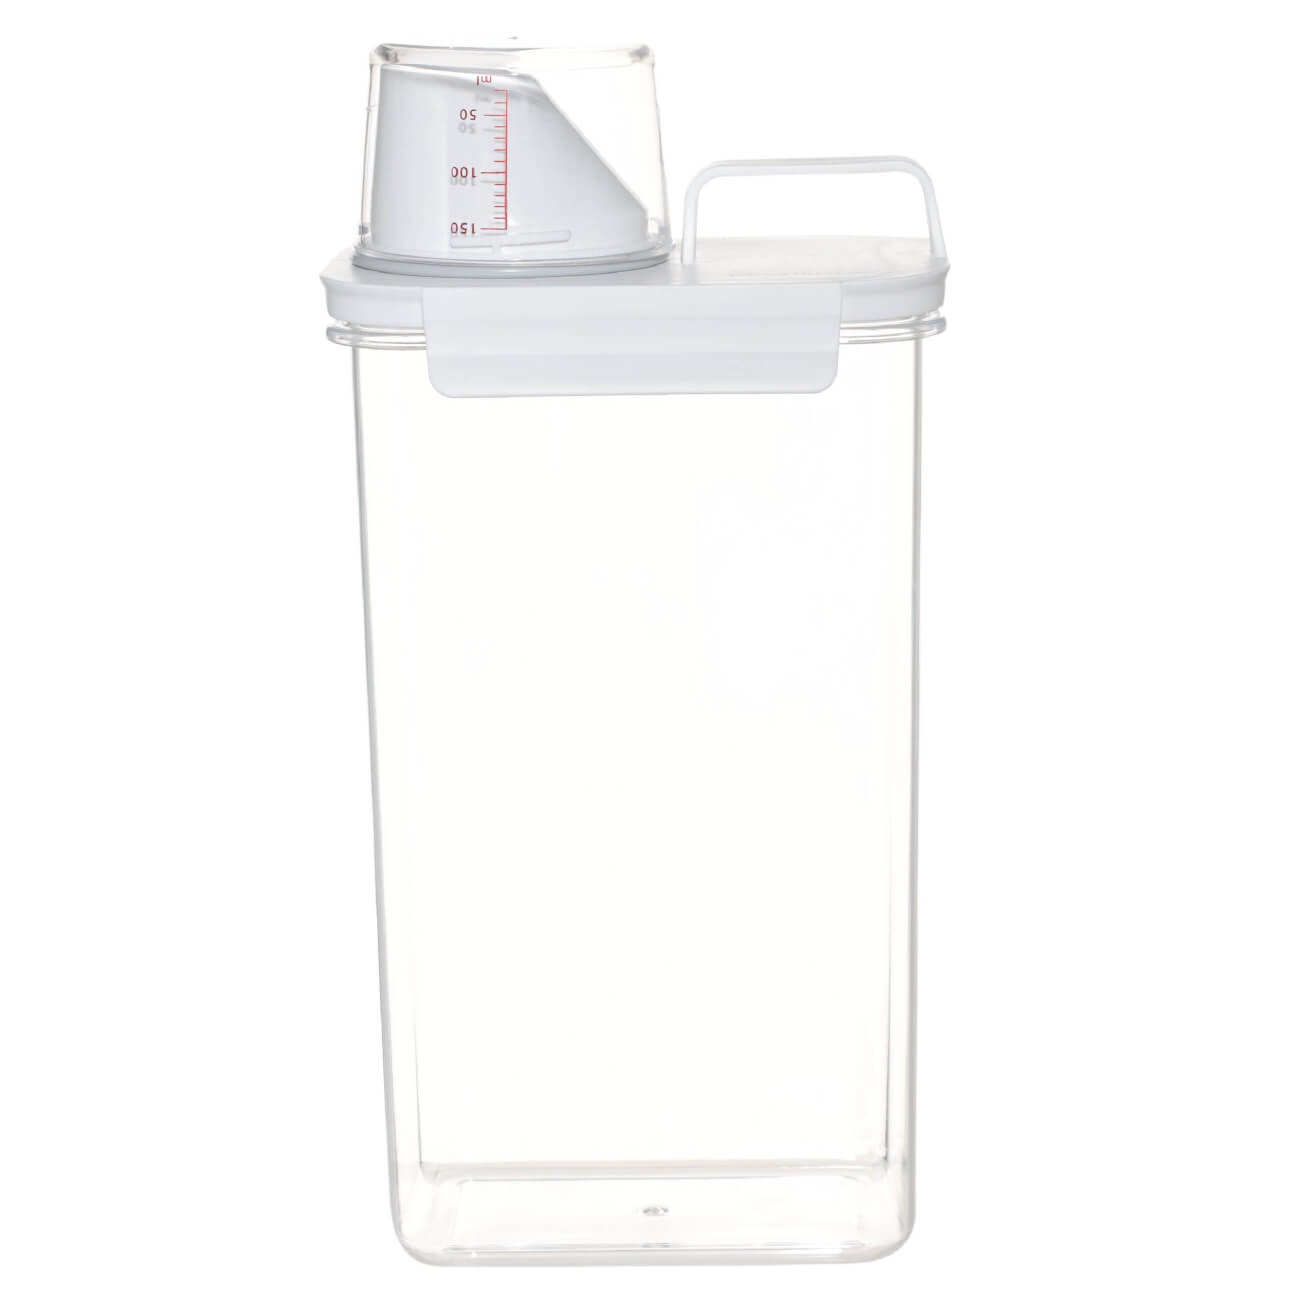 Контейнер для стирального порошка или геля, 2,3 л, с мерником, пластик, белый, Compact контейнер для порошка 5 л ведерко полимербыт с493 4349300